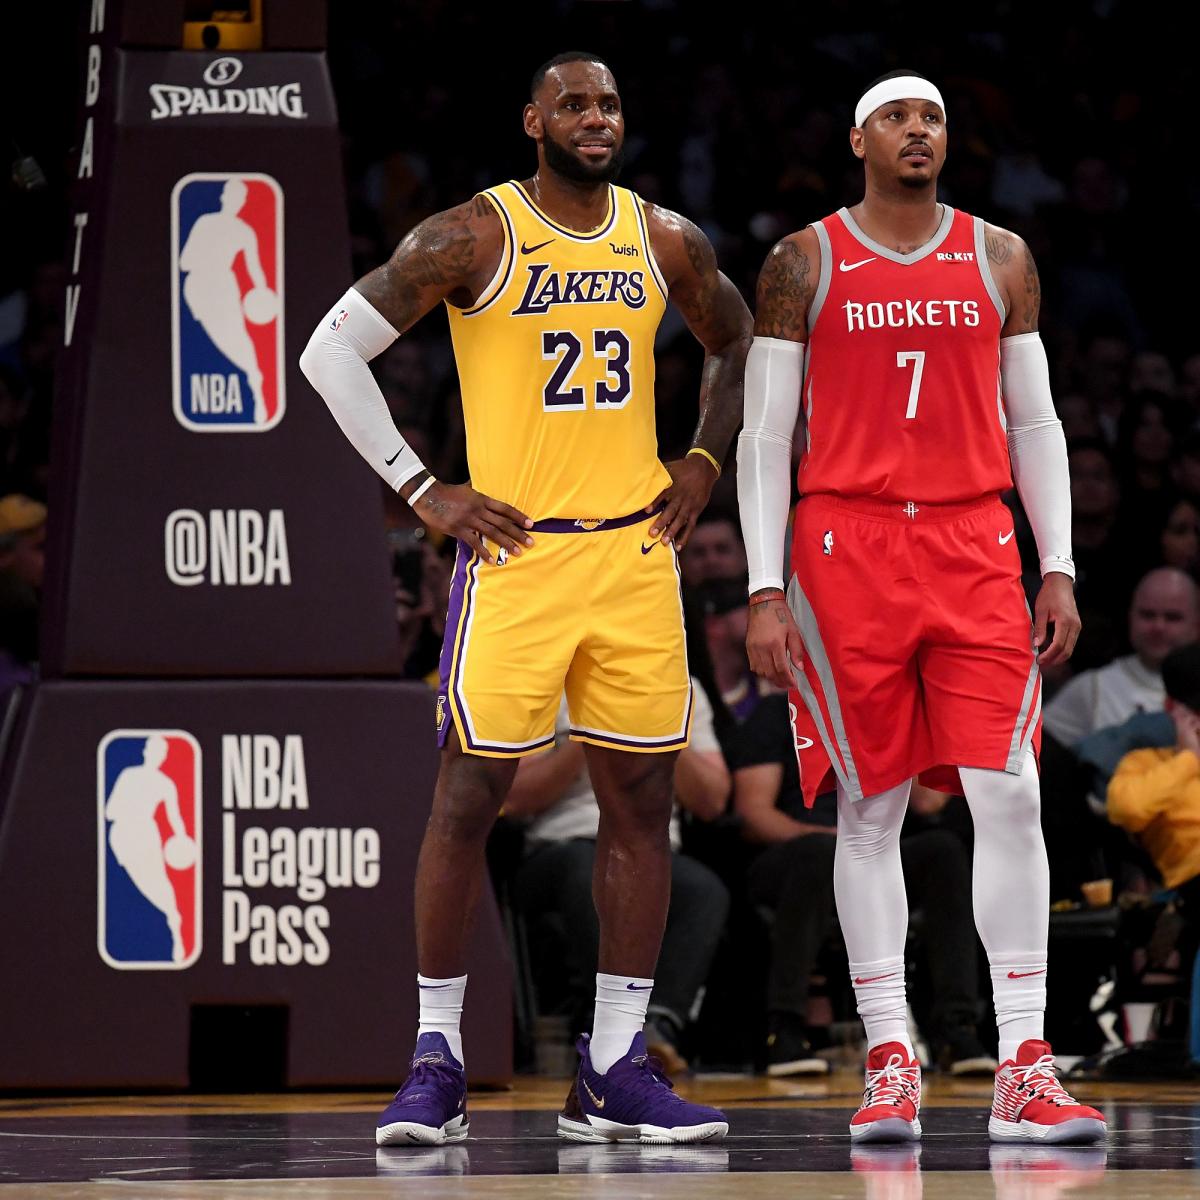 Carmelo Anthony, Thunder to part ways; Rockets, Lakers, Heat already linked